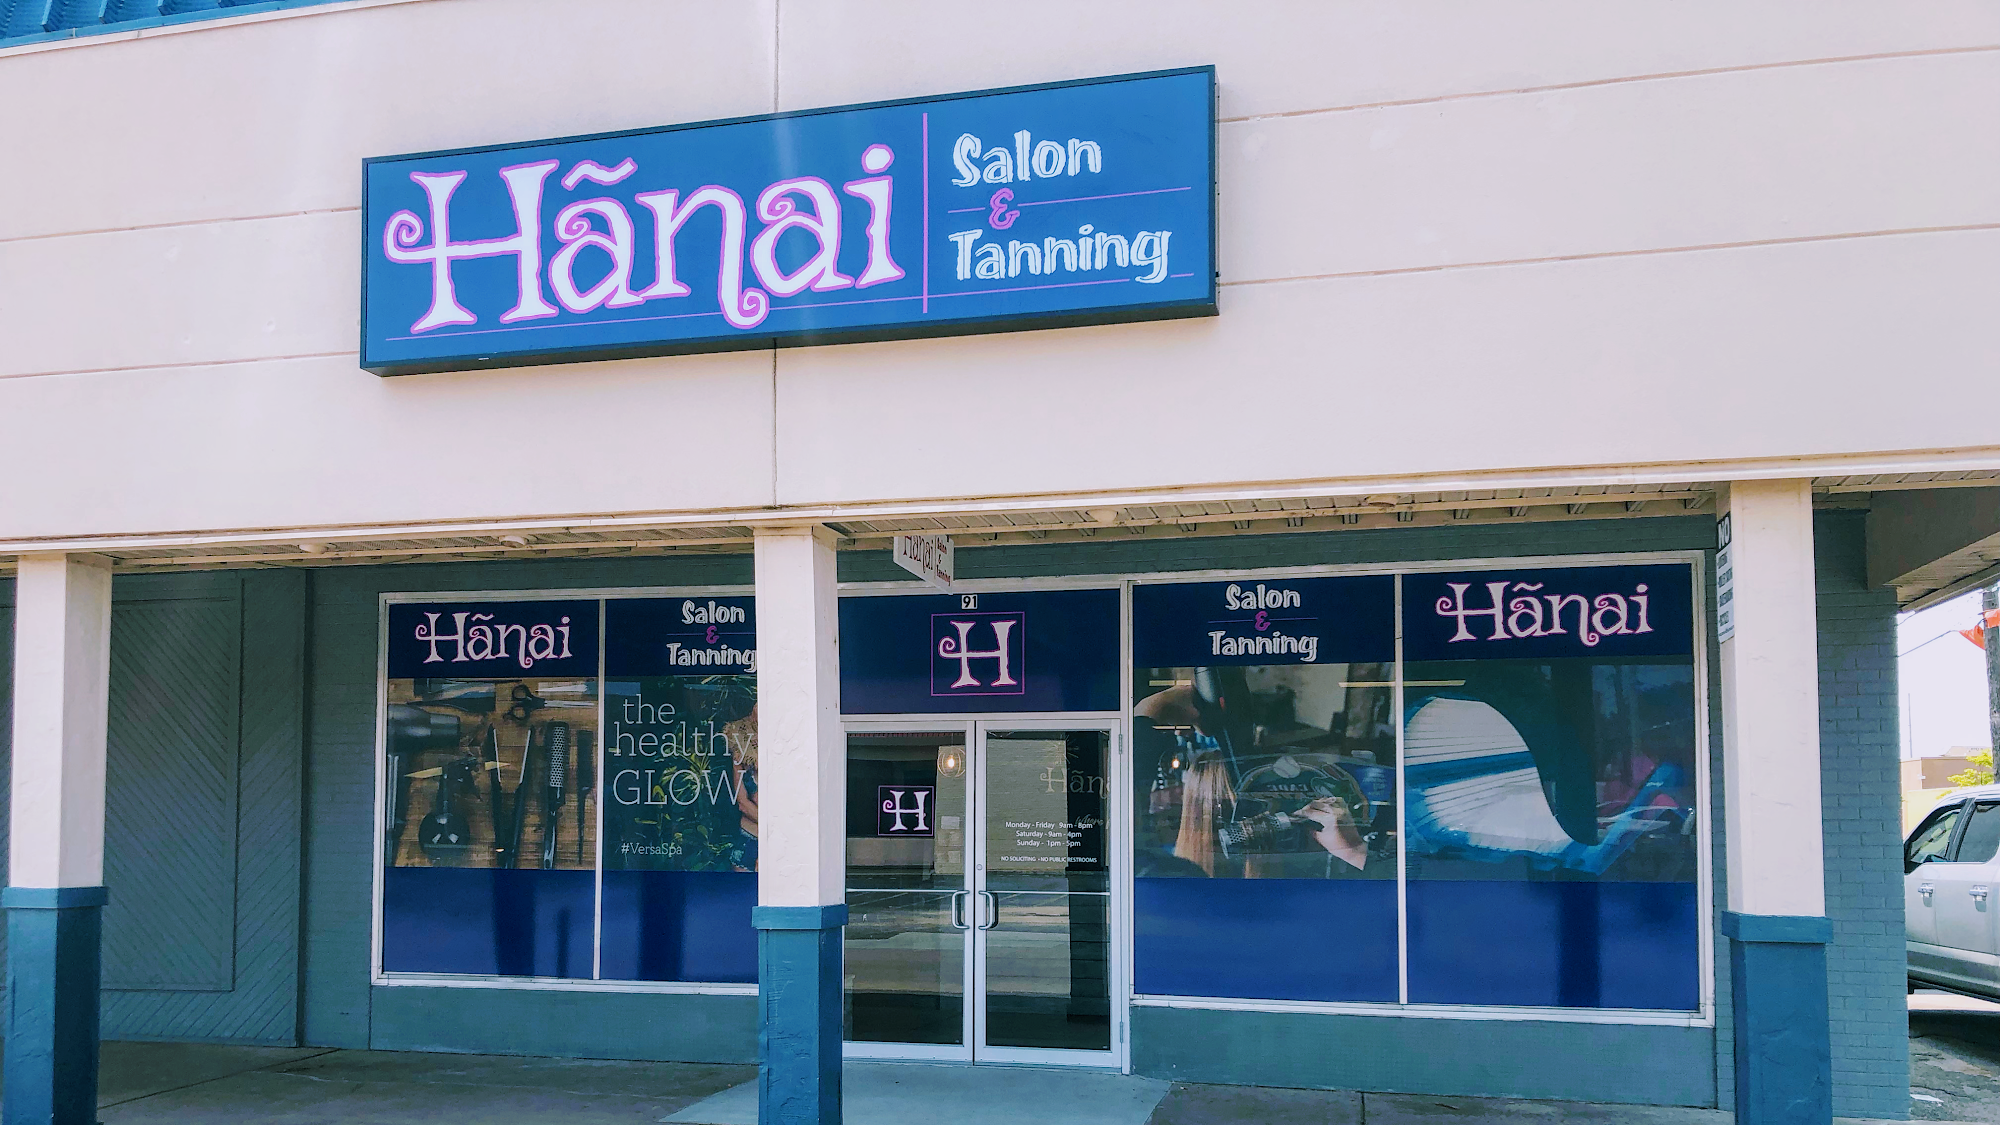 Hanai Salon & Tanning